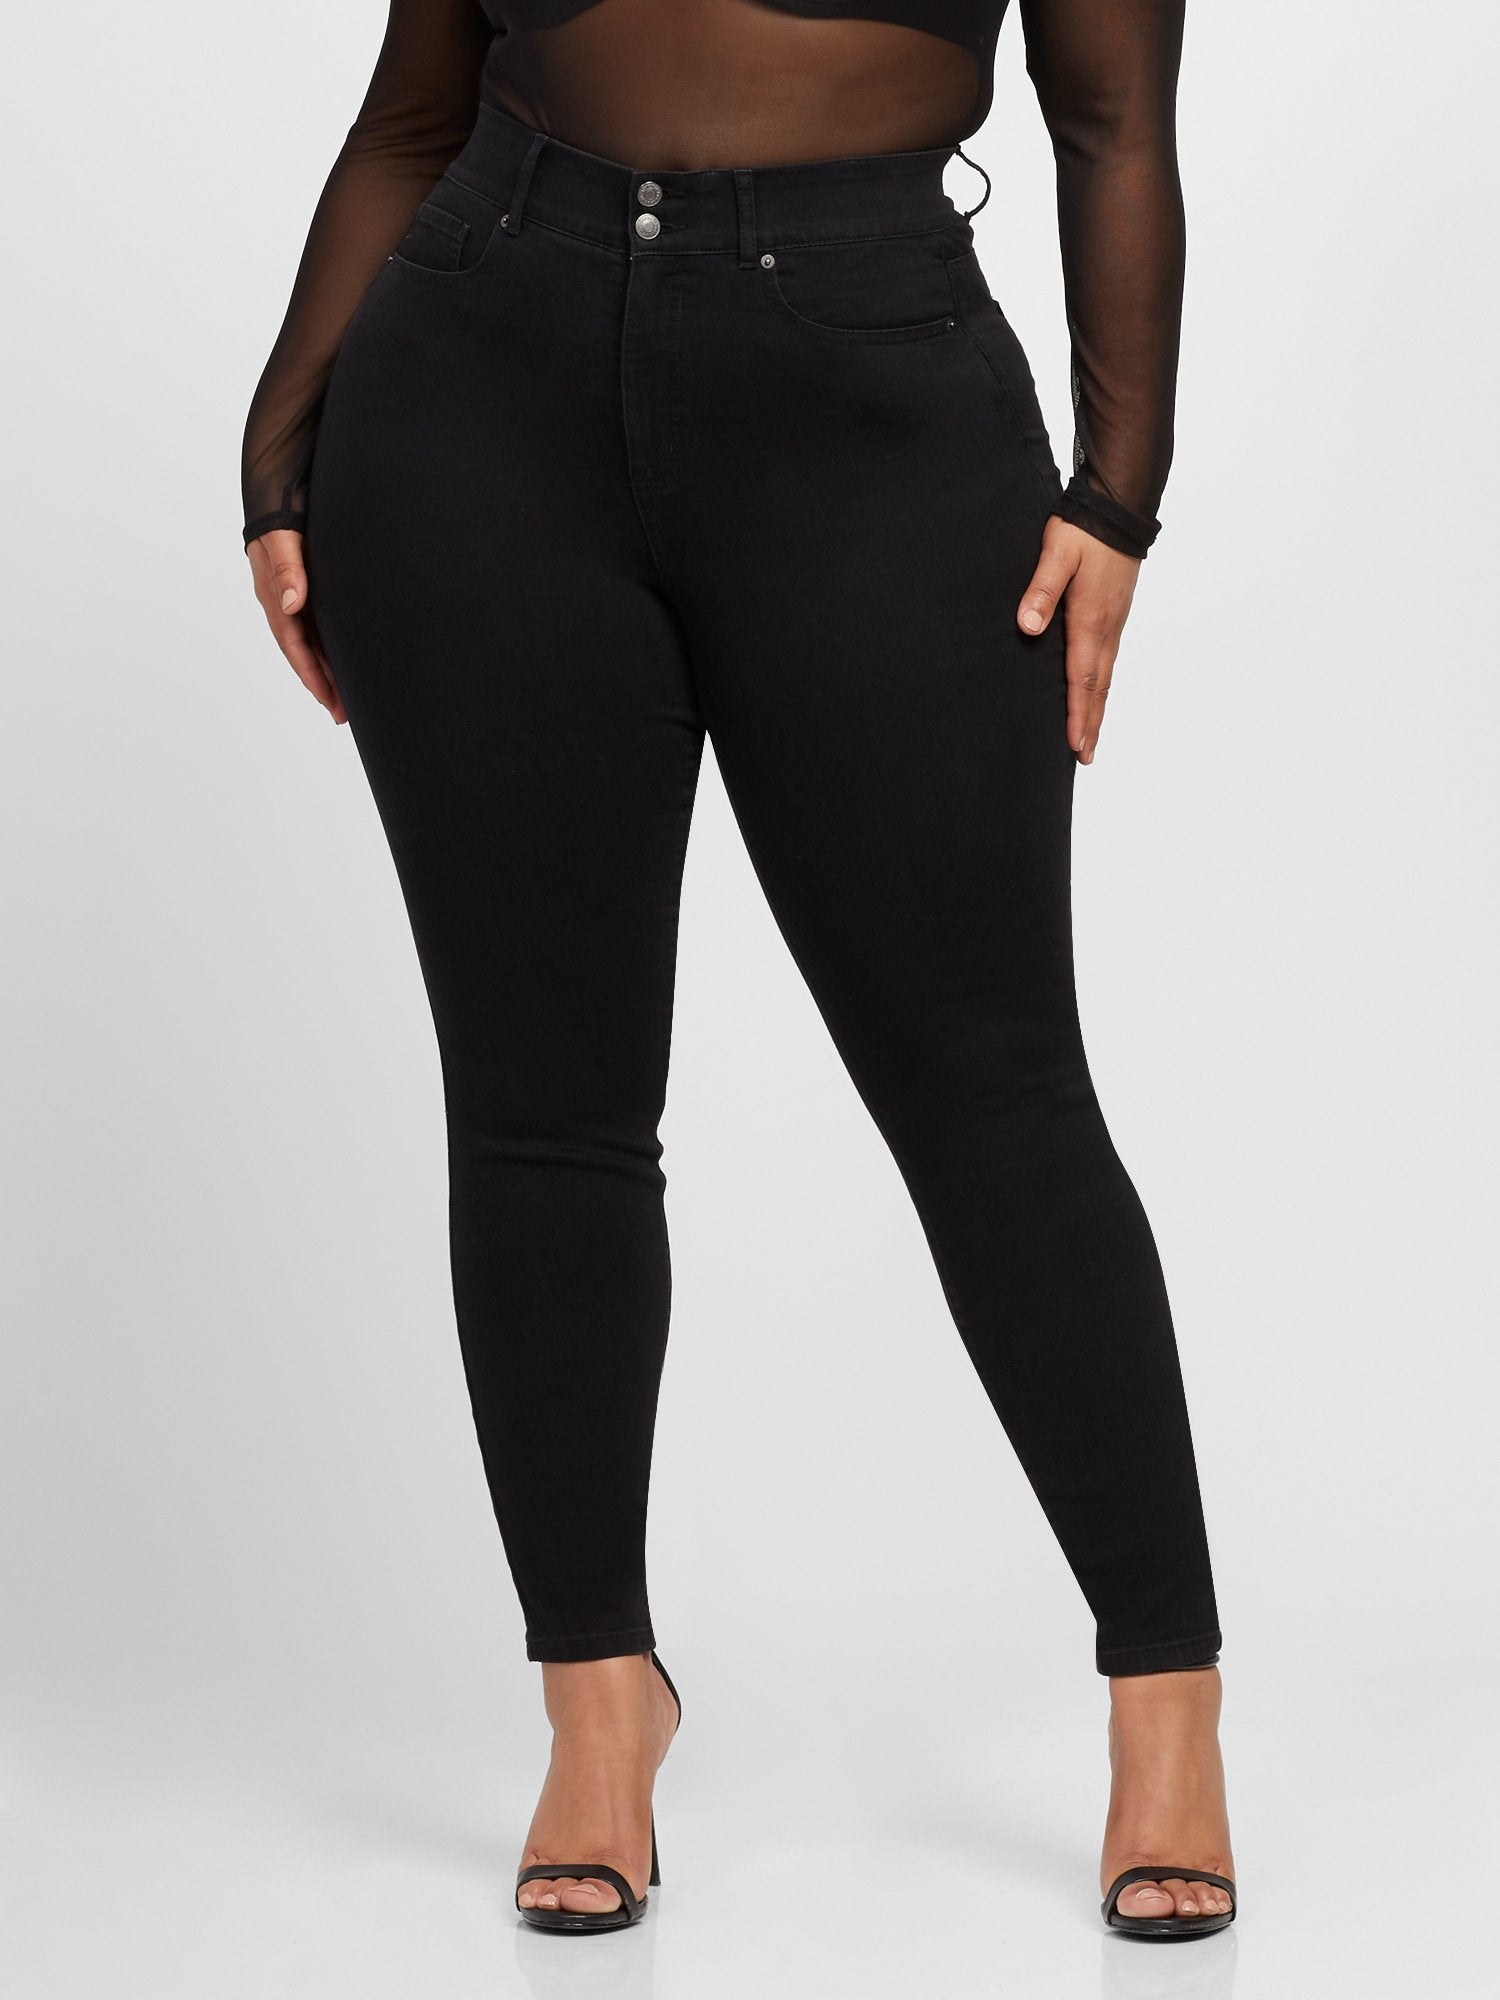 Plus Size Black Curvy Skinny Jeans - Tall Inseam